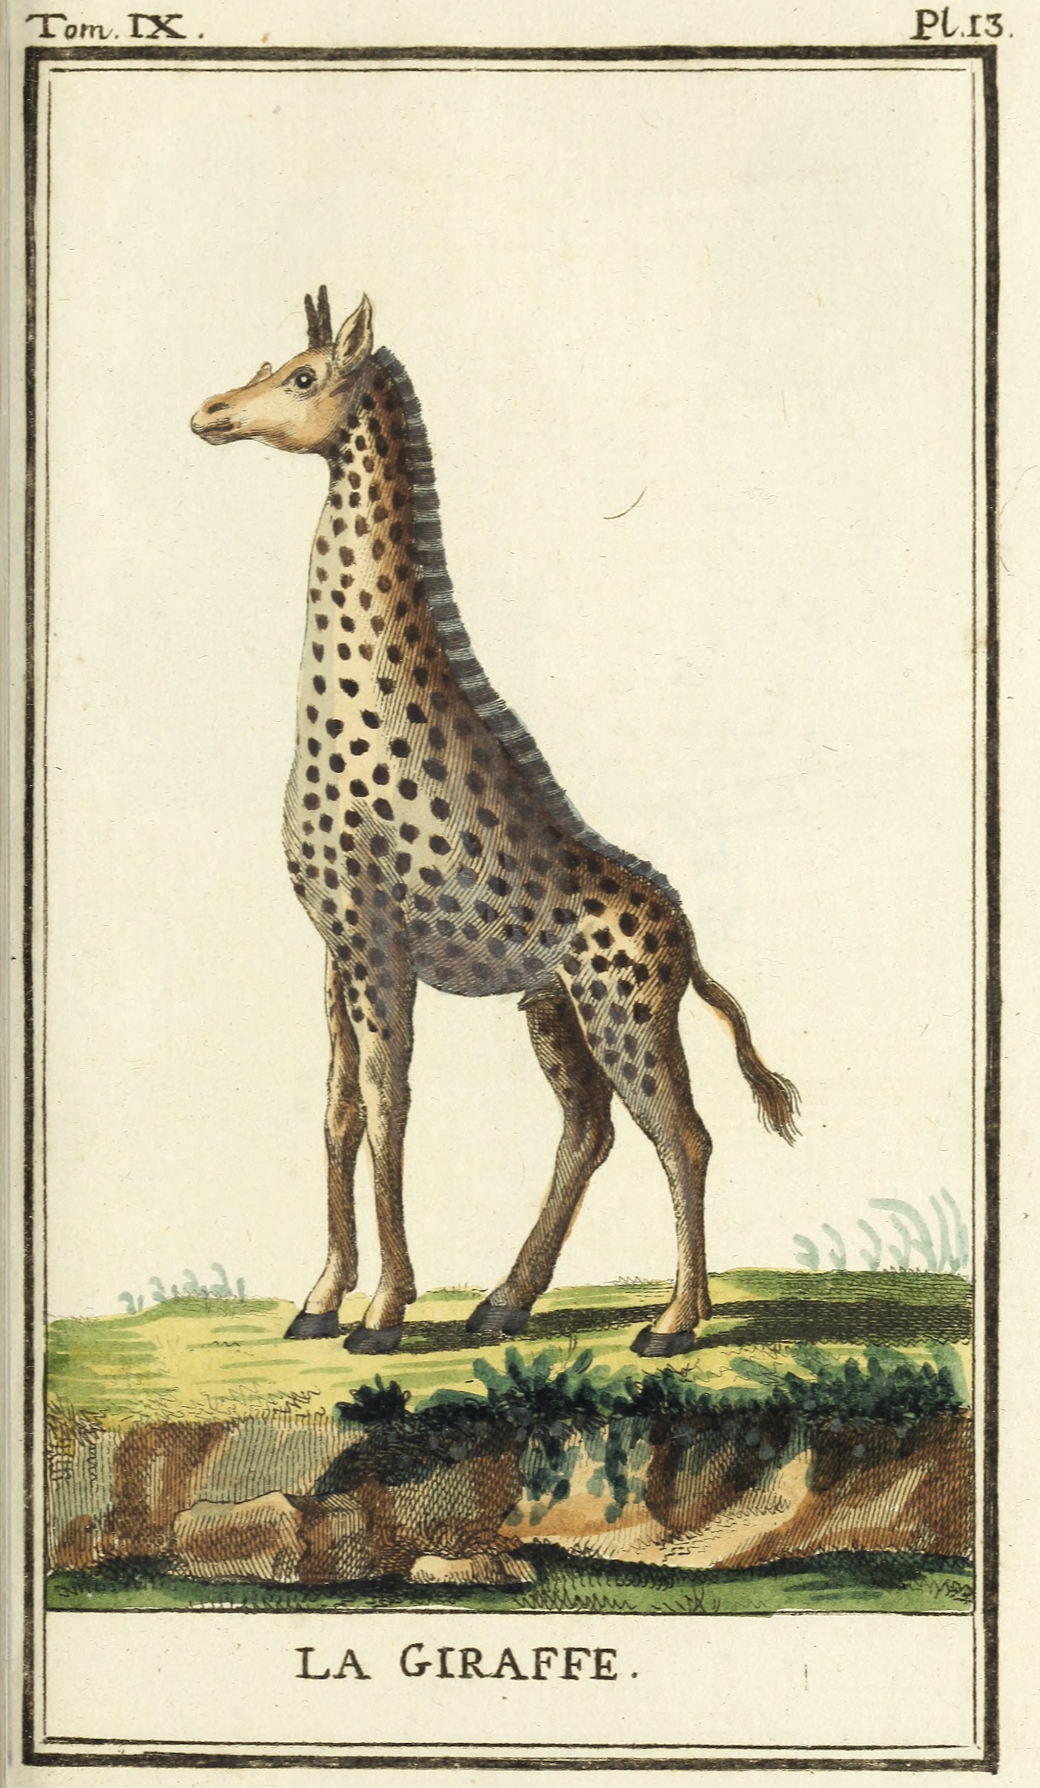 Georges Buffon, Histoire naturelle, générale et particulière,  
Quadrupèdes, Tome IX (Paris, 1787). Public domain.